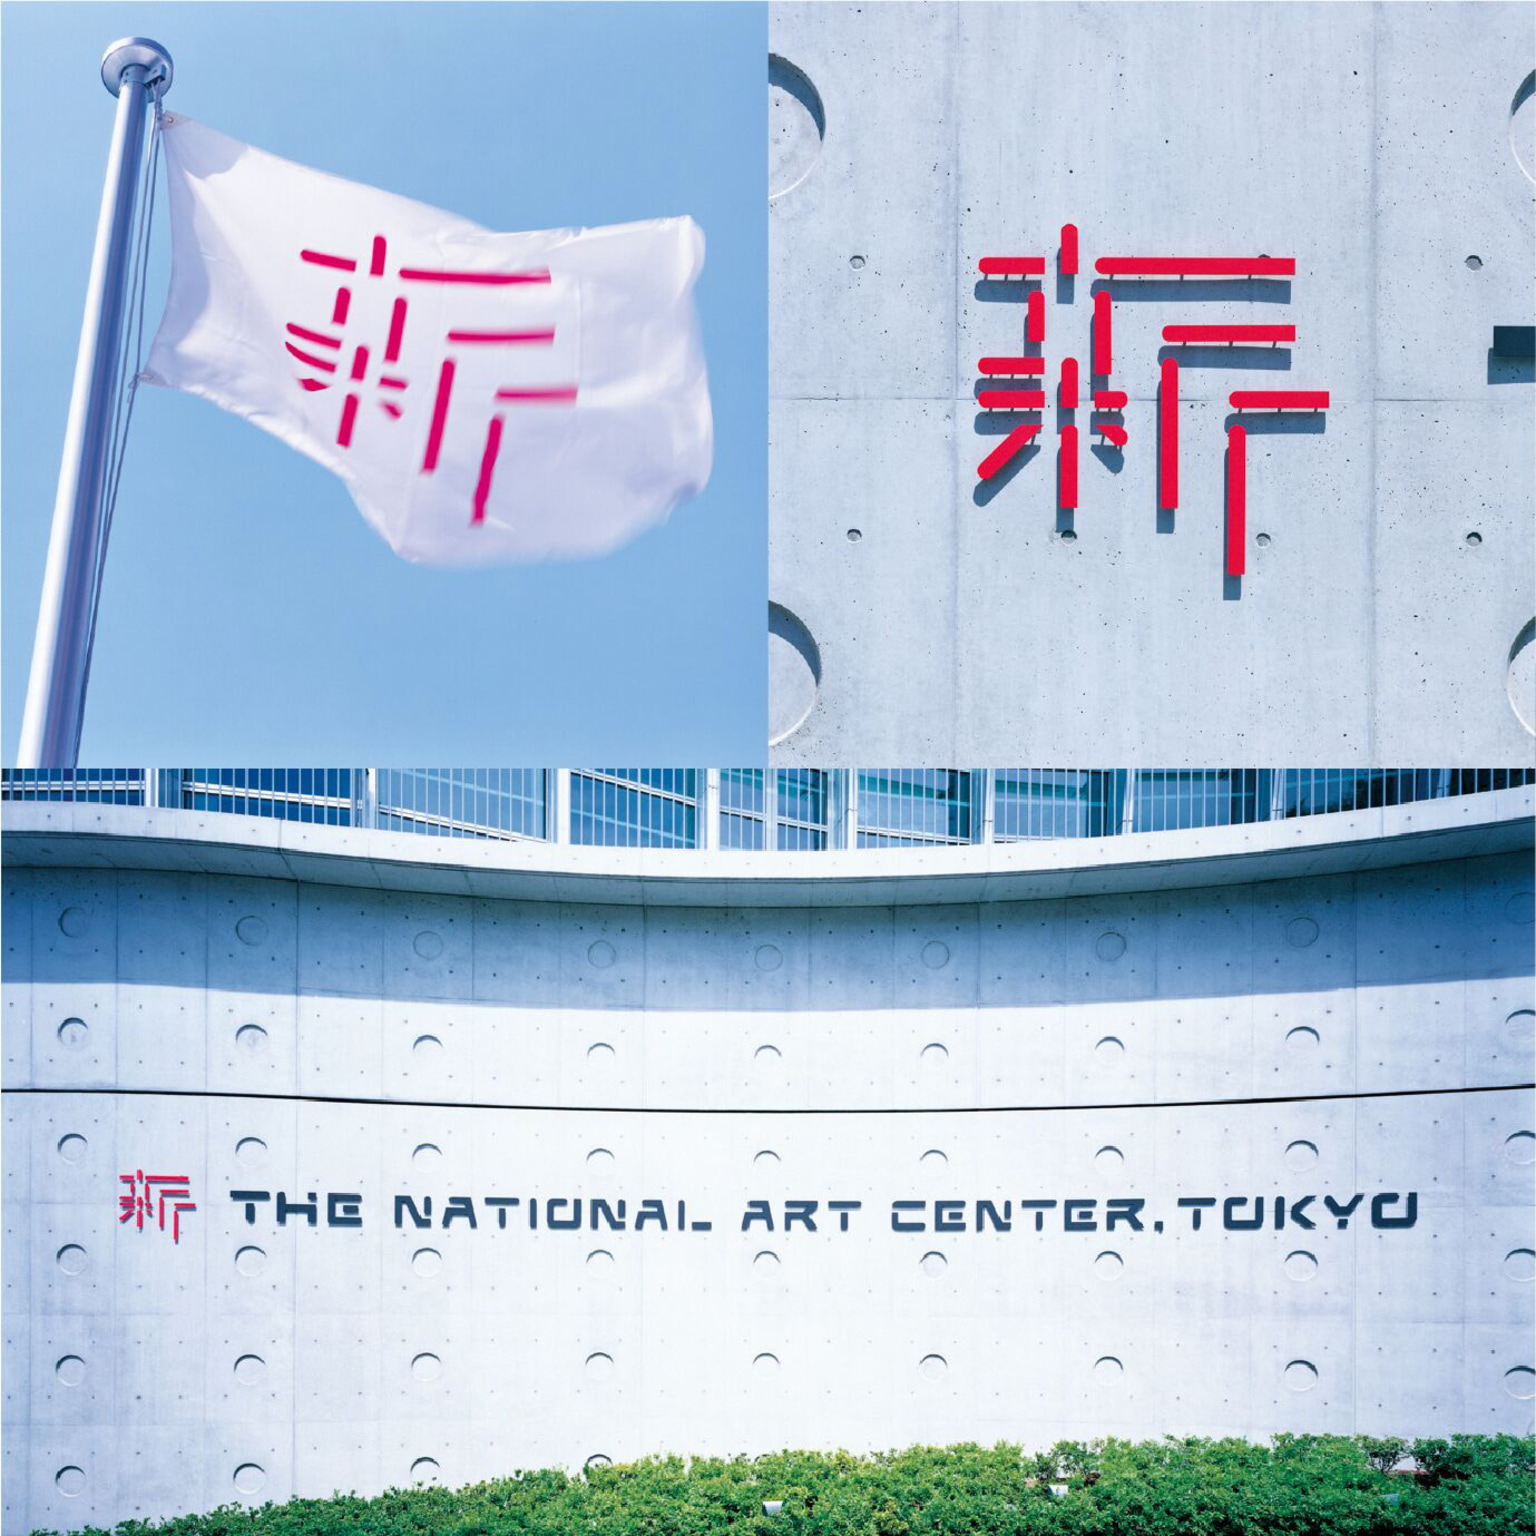 nact museum tokyo logo